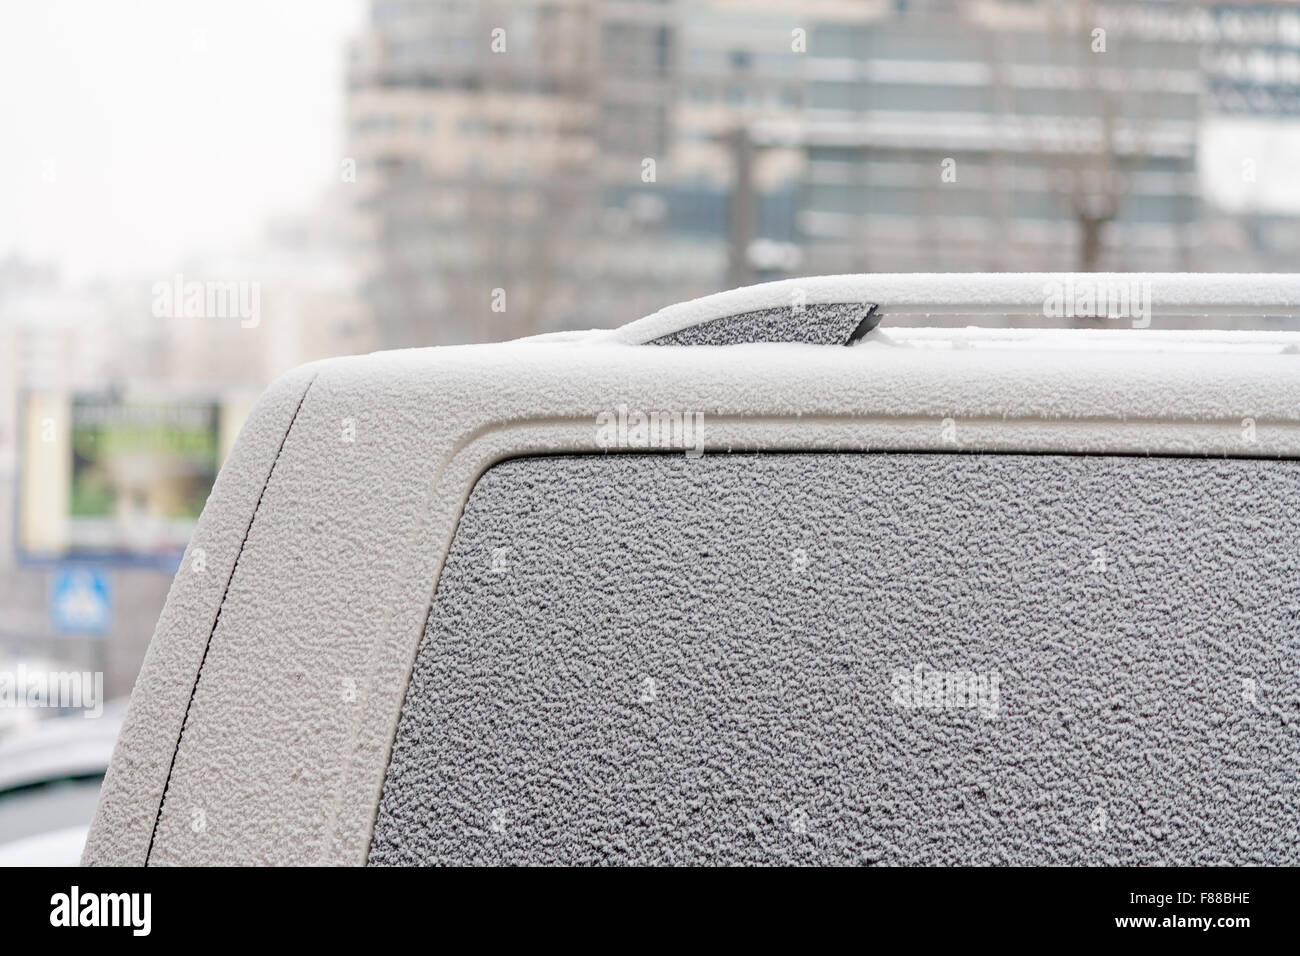 Gros plan de la fenêtre de voiture congelée cristaux de neige froid glace Banque D'Images